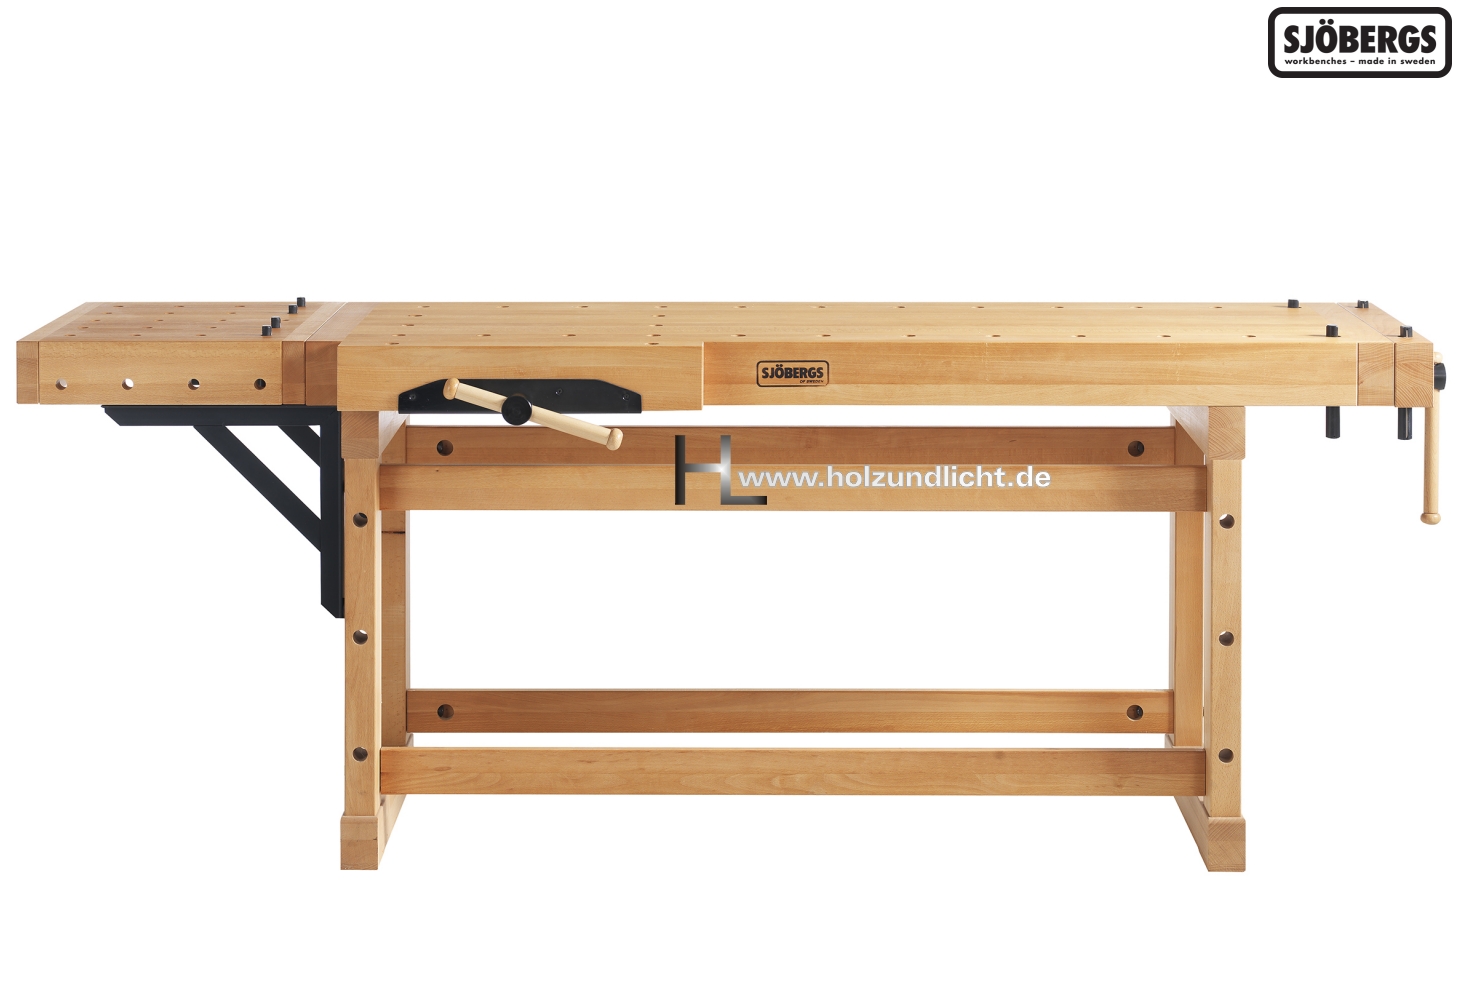 Onlineshop für Maschinen, Werkzeug, Holz- und Lichtwaren - Sjöbergs Hobelbank  ELITE 2000 + CP